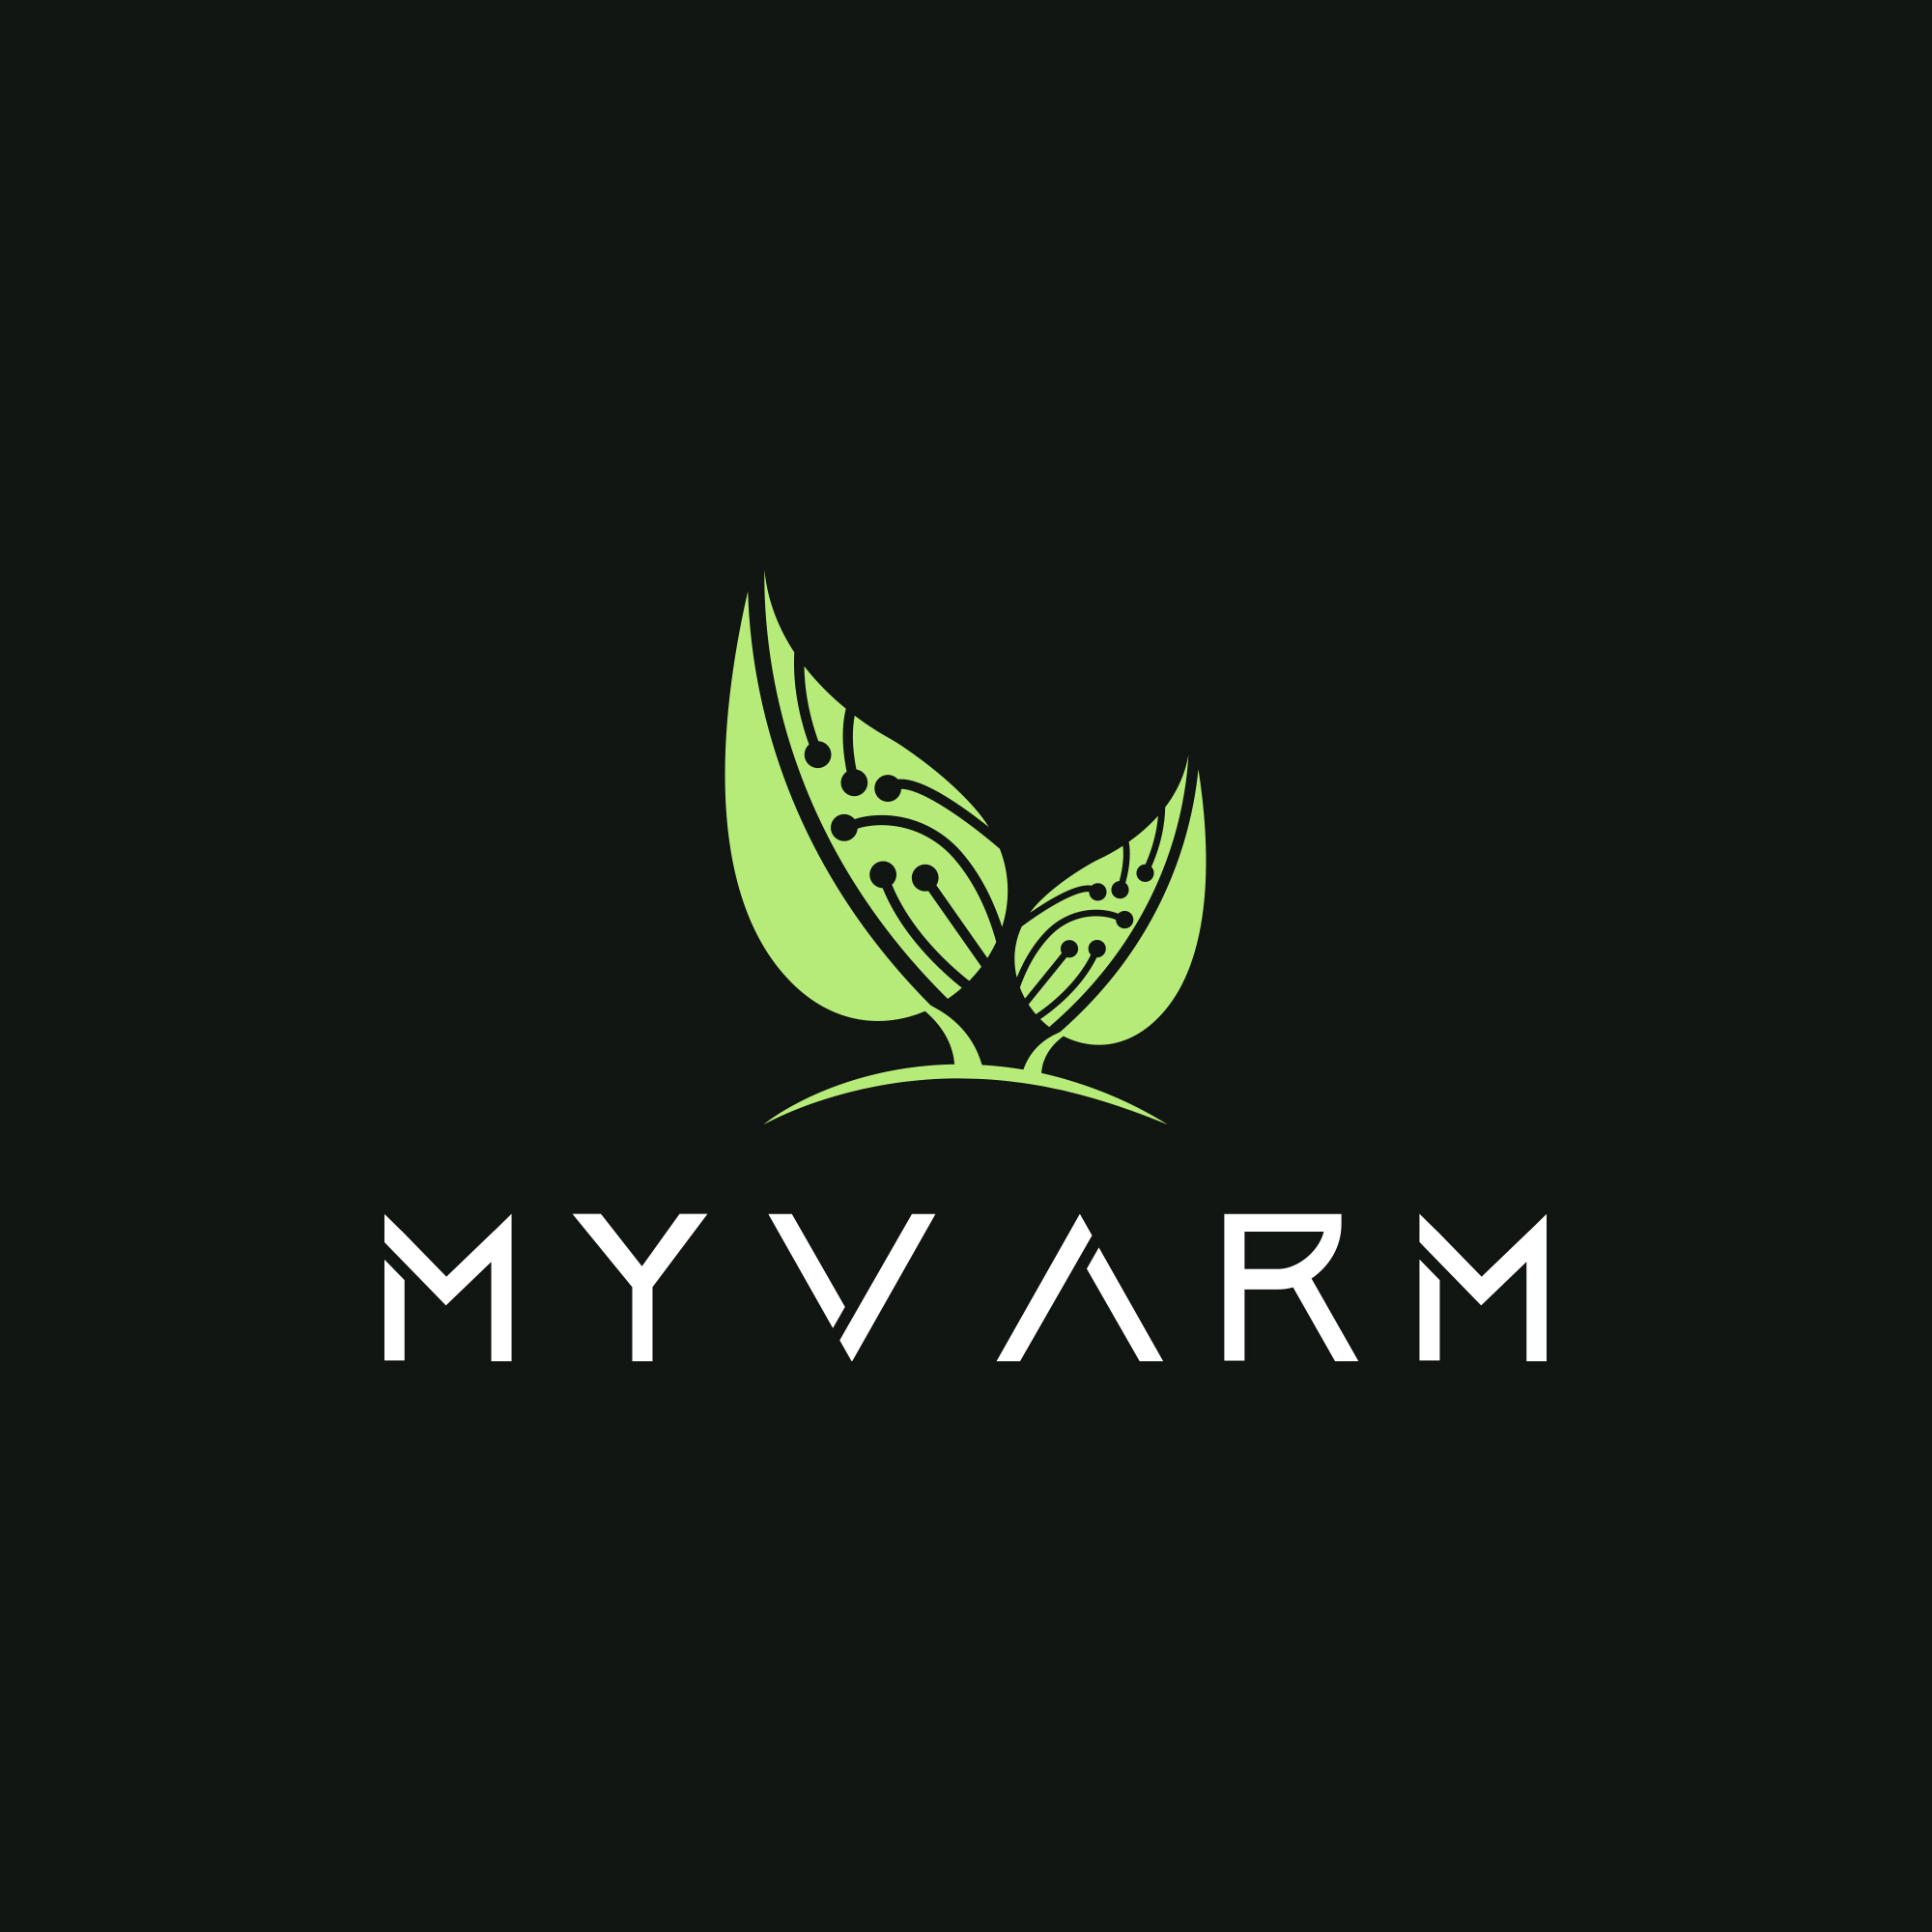 MyVarm